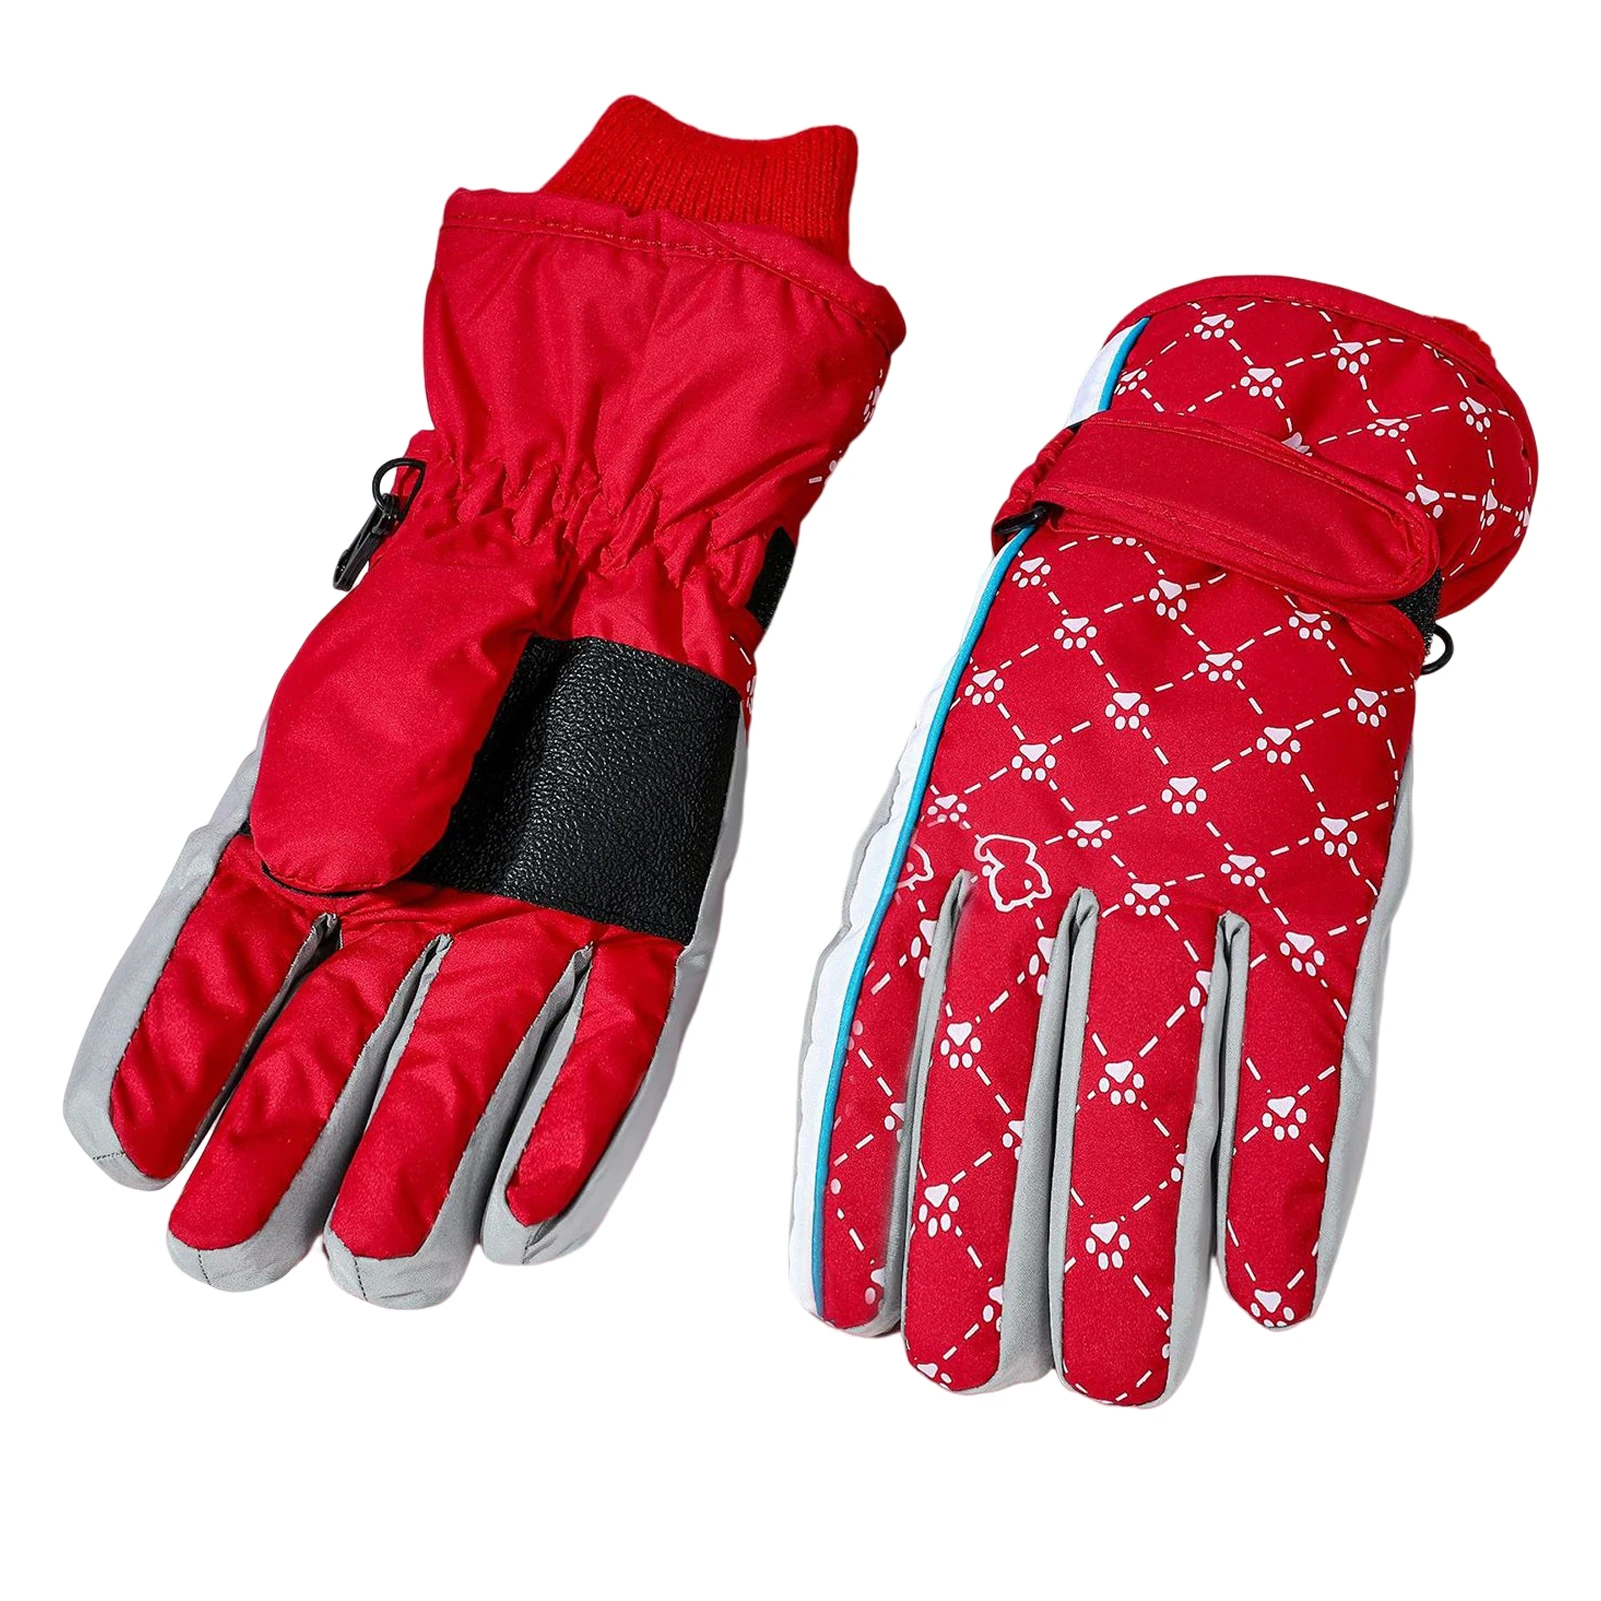 

Зимние перчатки для сноуборда, лыж, текстурные перчатки для поверхности, для улицы, рыбалки, поездки, свидания, шоппинга MC889